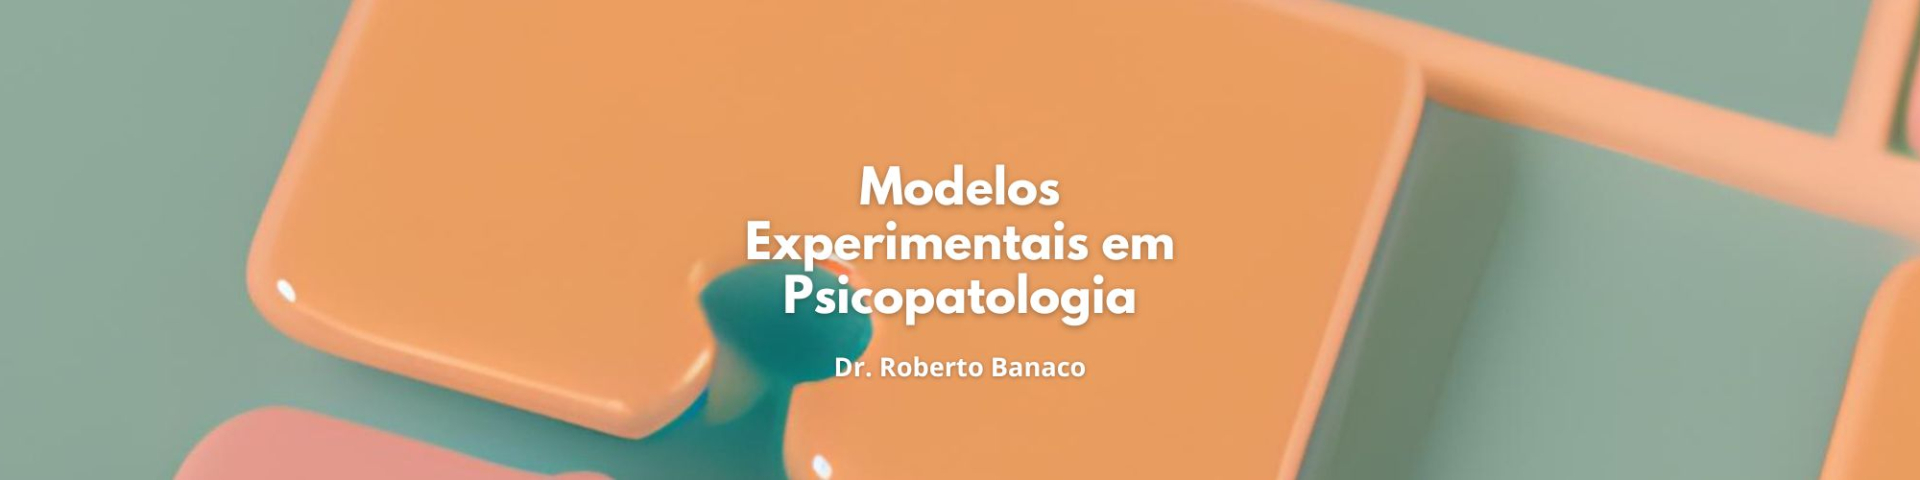 Modelos Experimentais em Psicopatologia